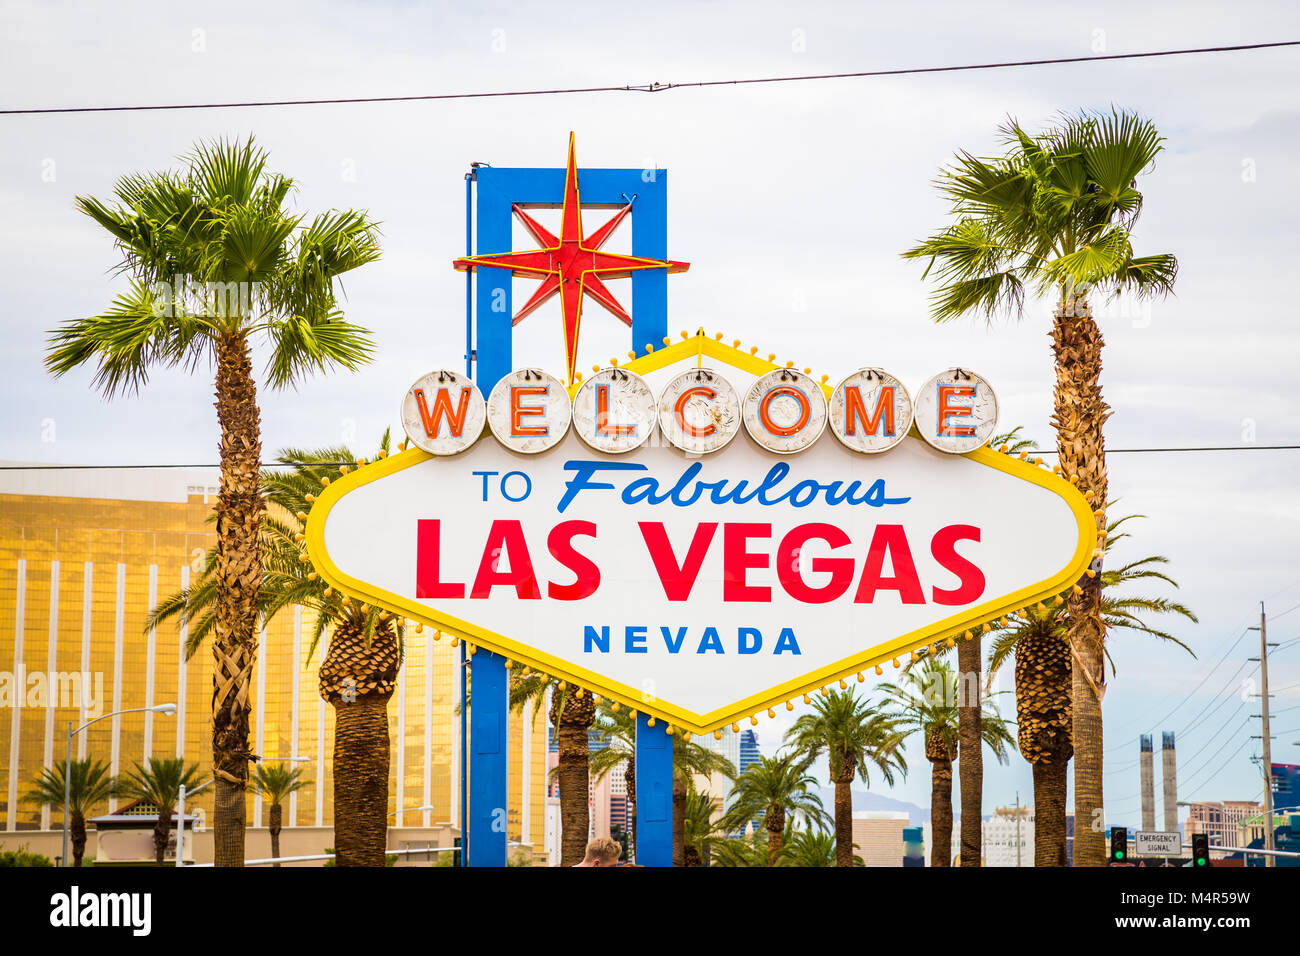 L'affichage classique de panneau Welcome to Fabulous Las Vegas à l'extrémité sud de la célèbre Strip de Las Vegas sur une belle journée ensoleillée avec ciel bleu et nuages Banque D'Images